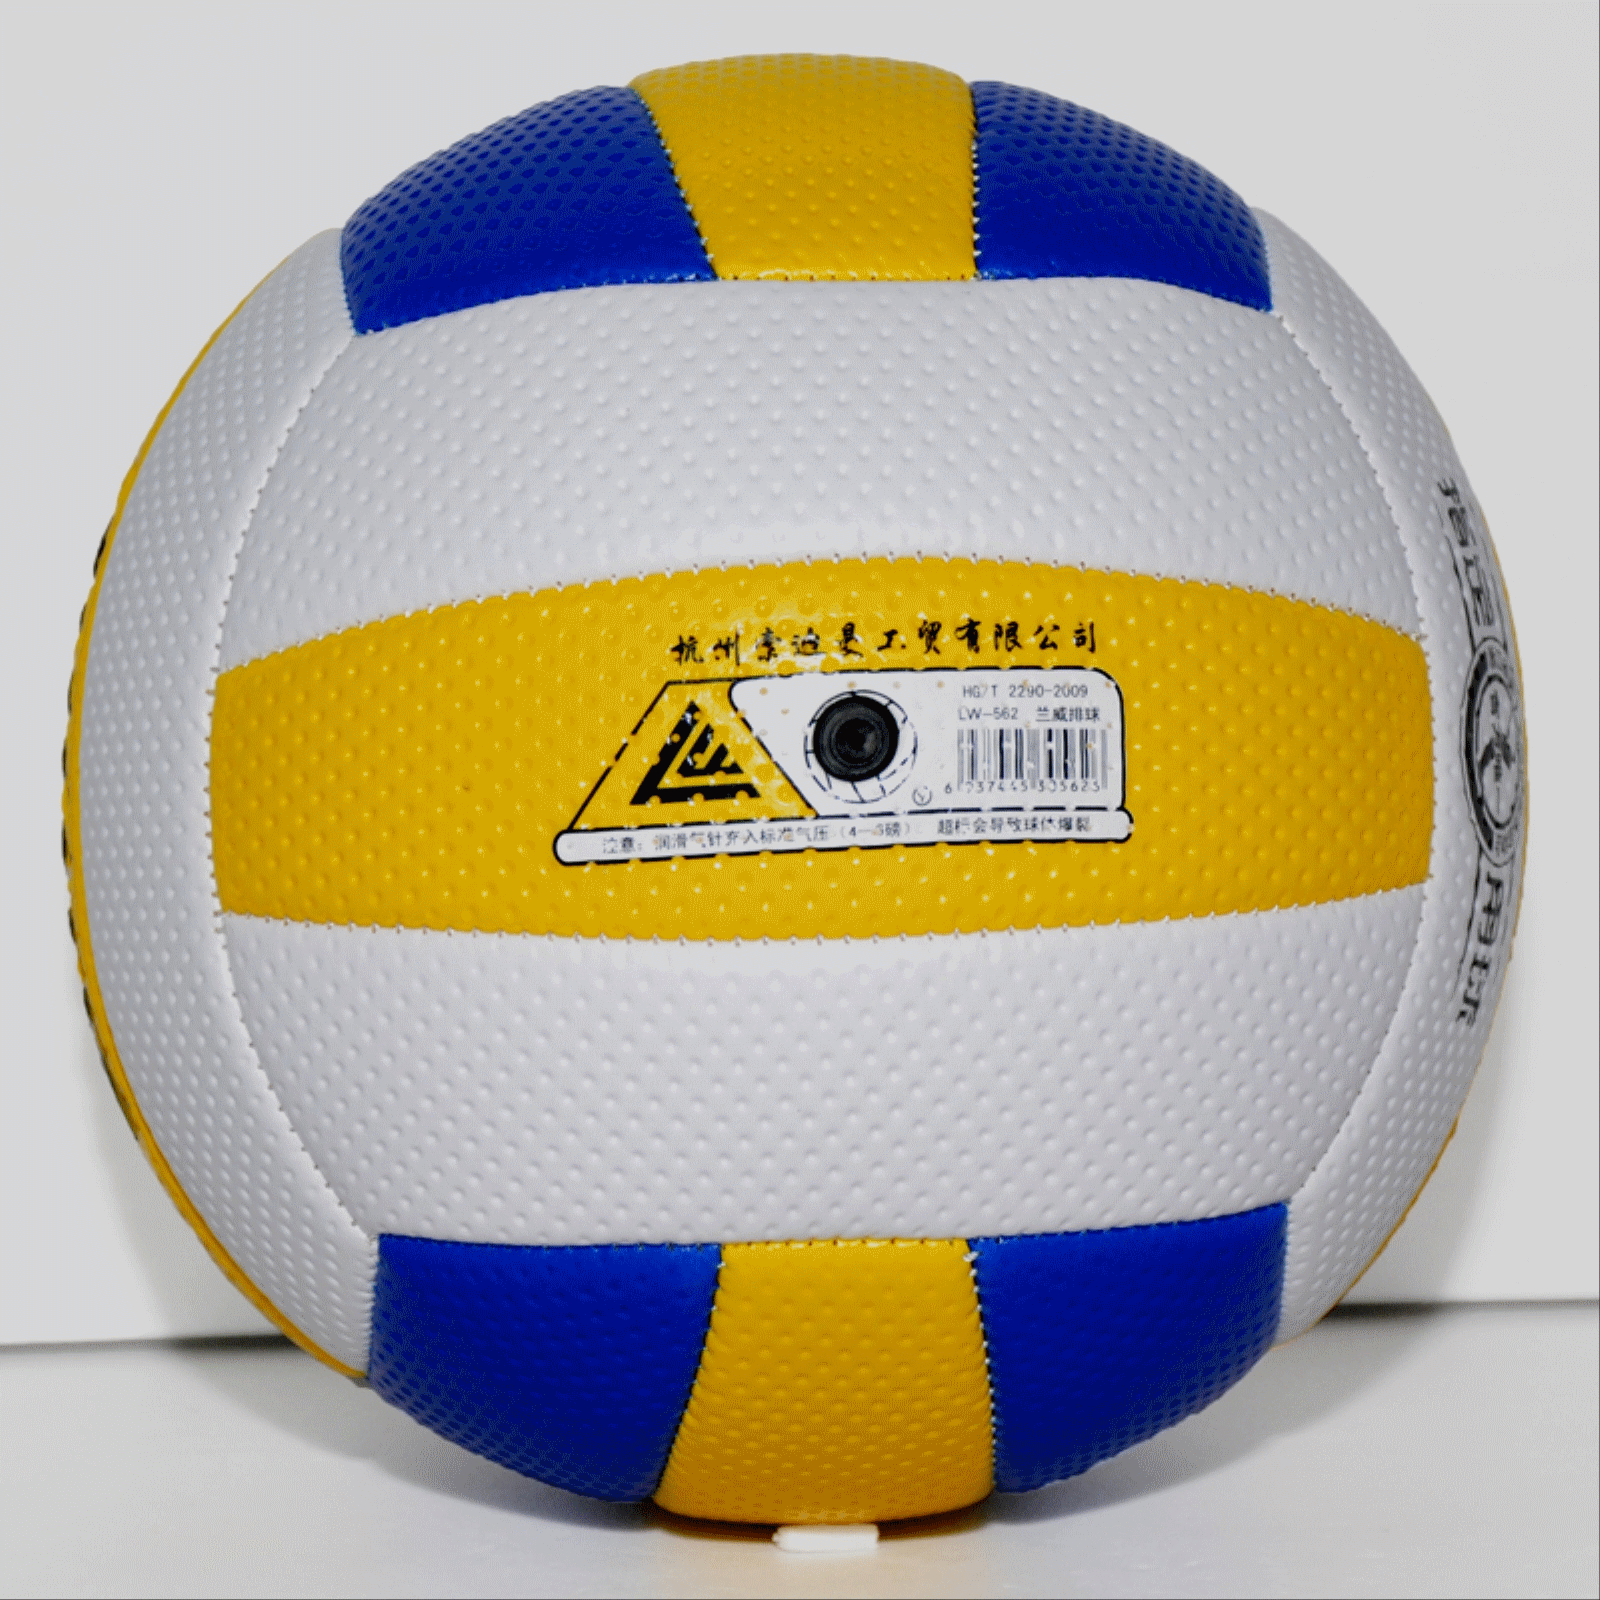 Ballon de volley - Ref 2008429